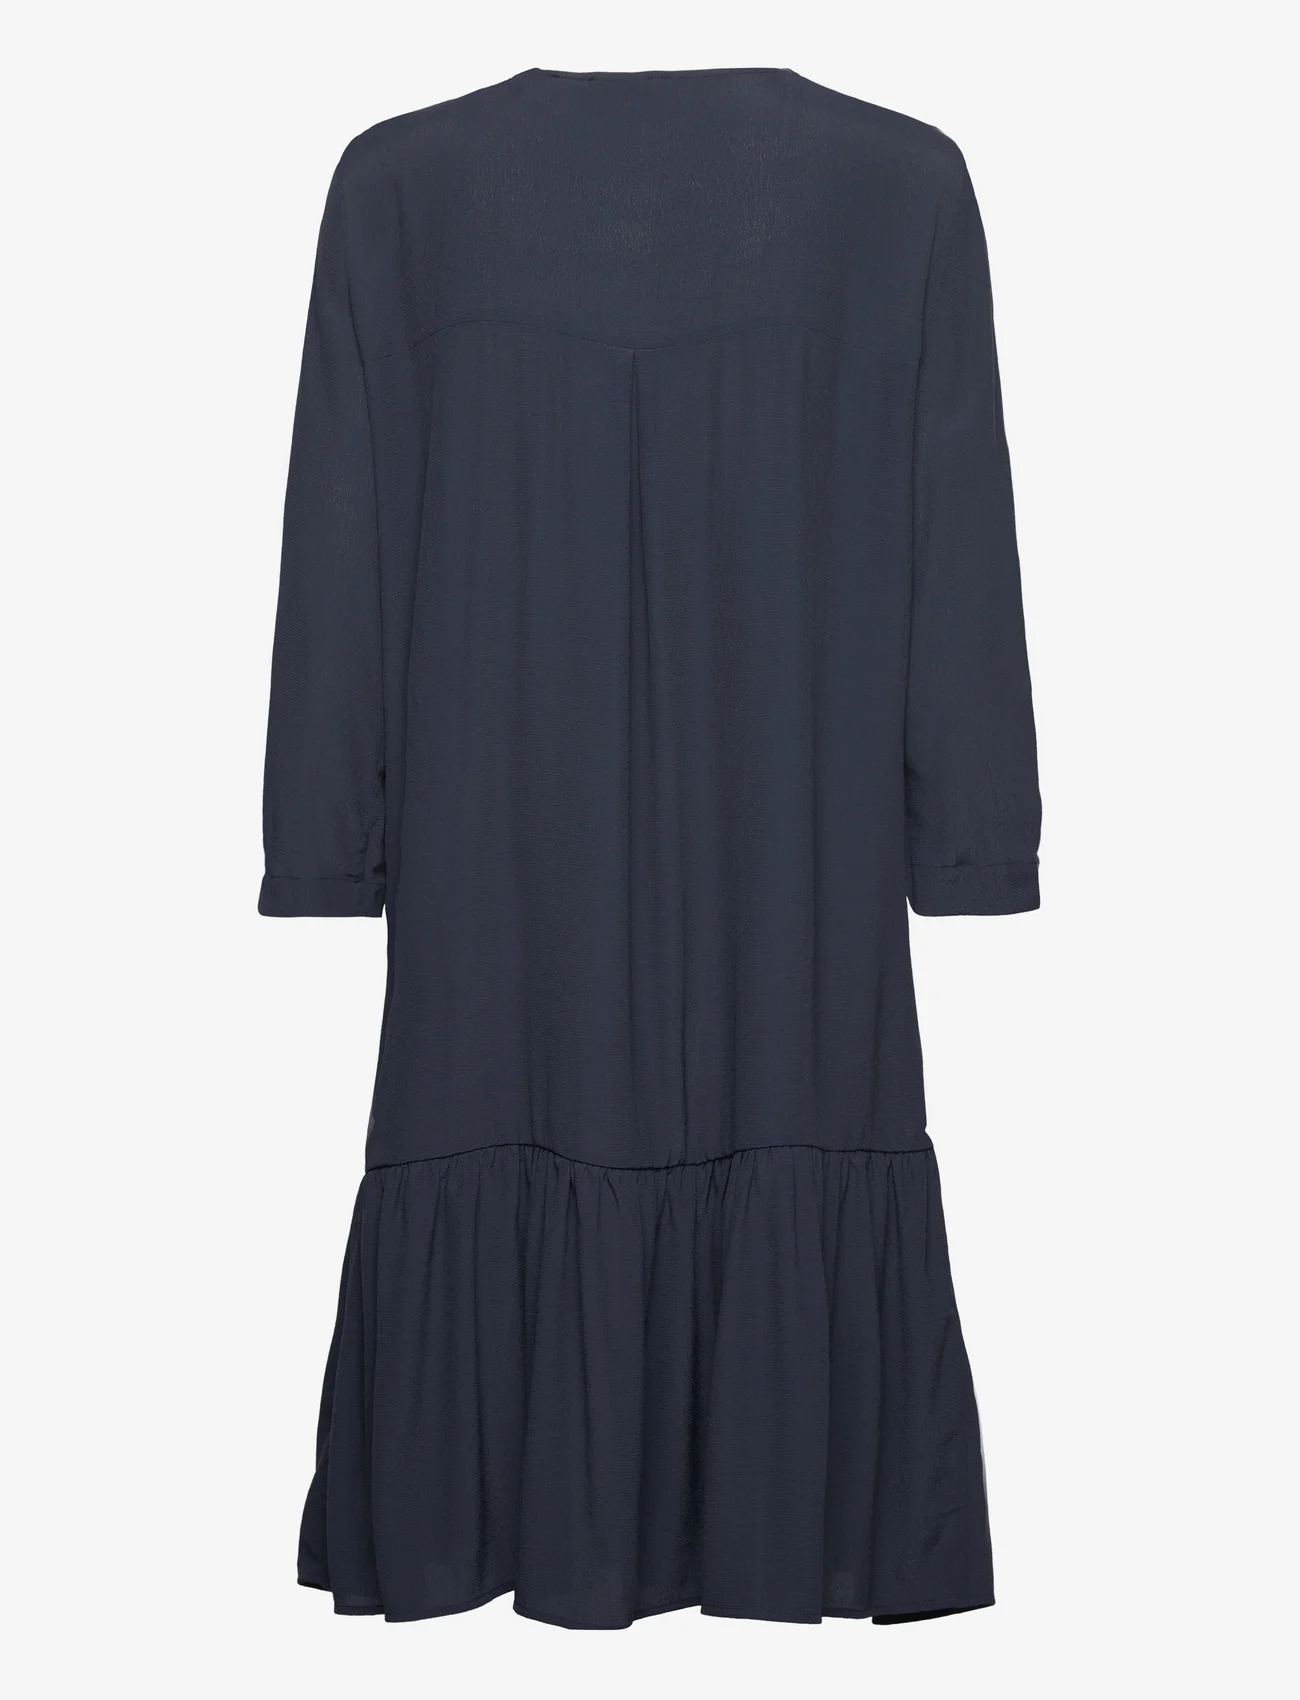 Esprit Casual - Dresses light woven - midi kjoler - navy - 1